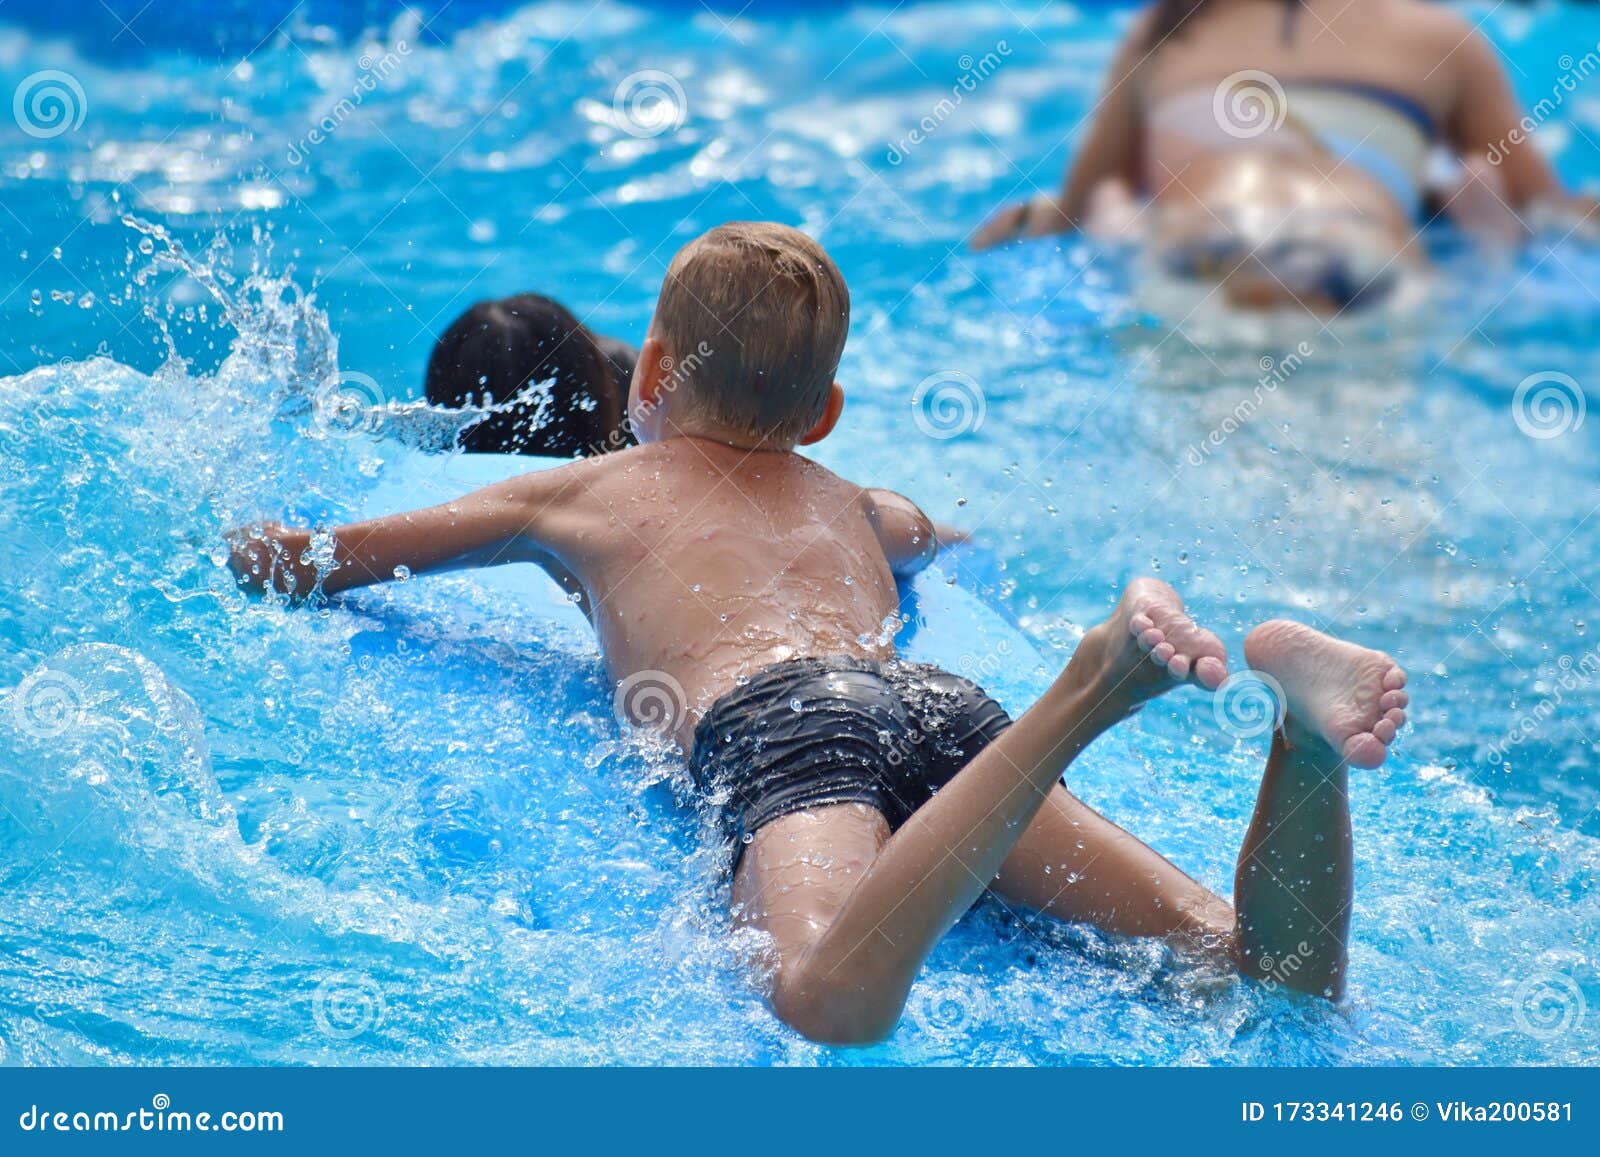 Little boy at aqua park stock photo. Image of blue, park 